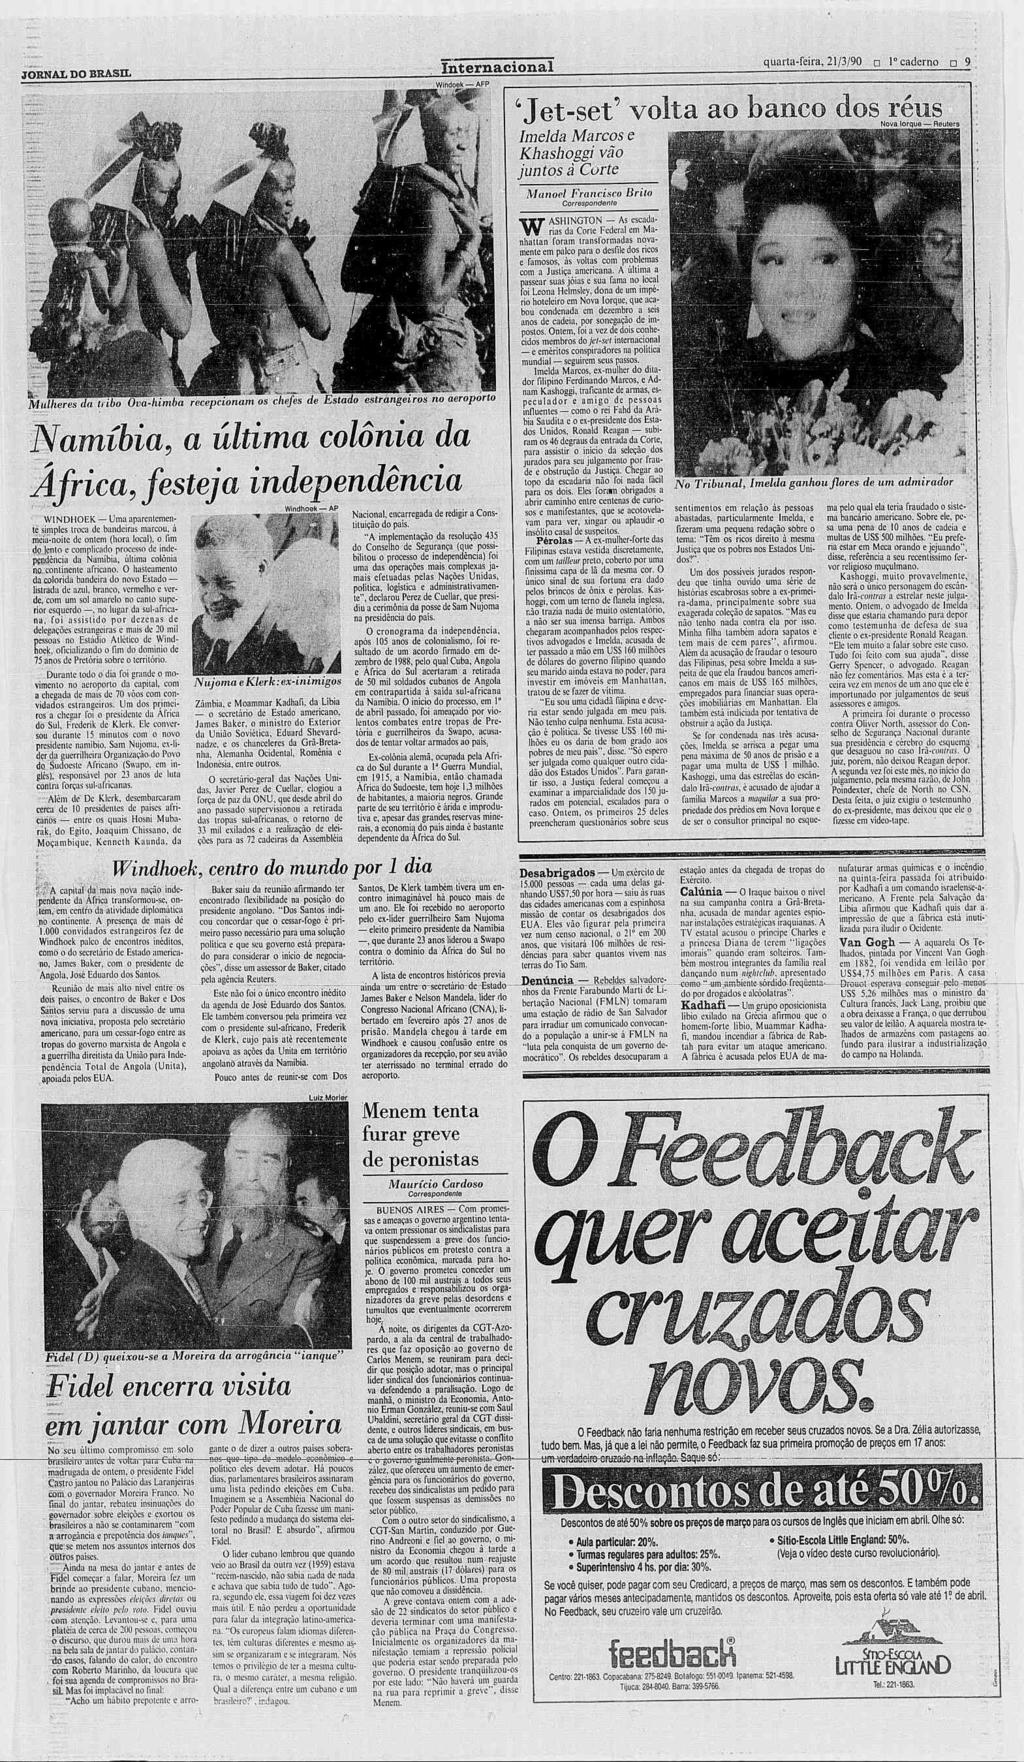 BRA (ç) JORNAL DO BRASIL SA 1990 Rio de Janeiro Quarta-feira, 21 de março de 1990 AnoXCIX N 343 Preço para o Rio CrS 30,00 foto